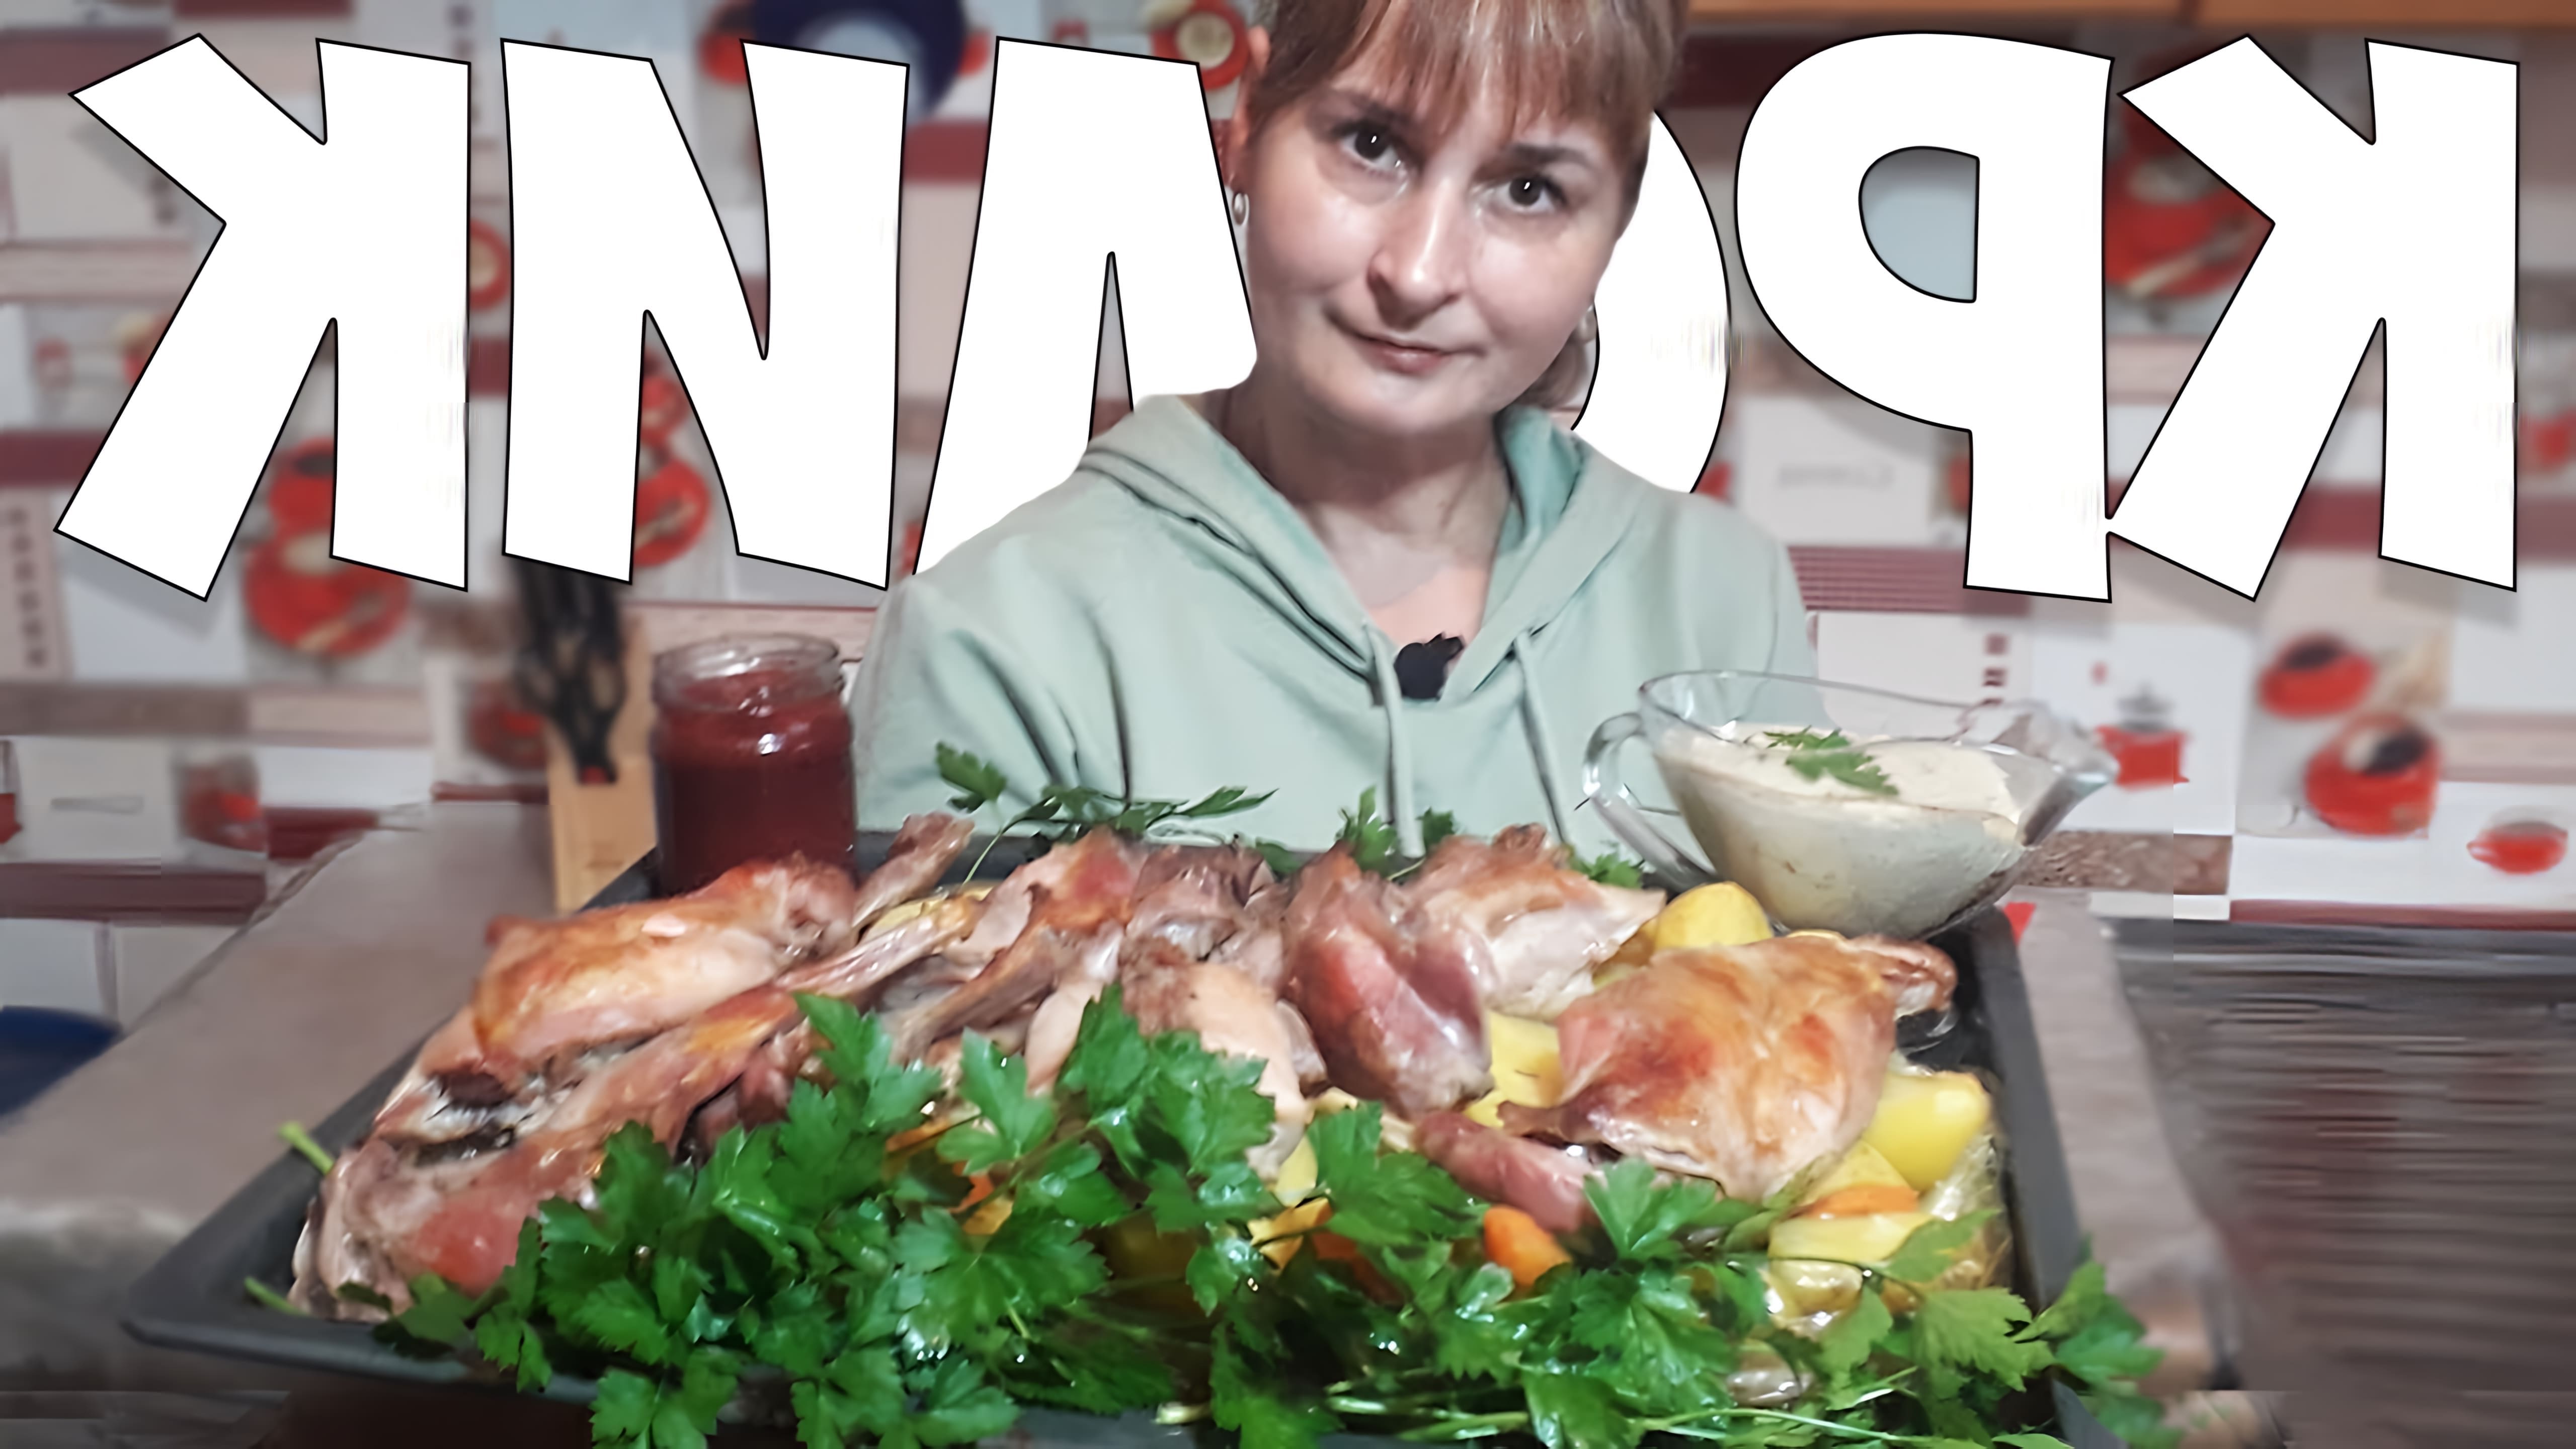 В этом видео демонстрируется рецепт приготовления кролика в рукаве с овощами